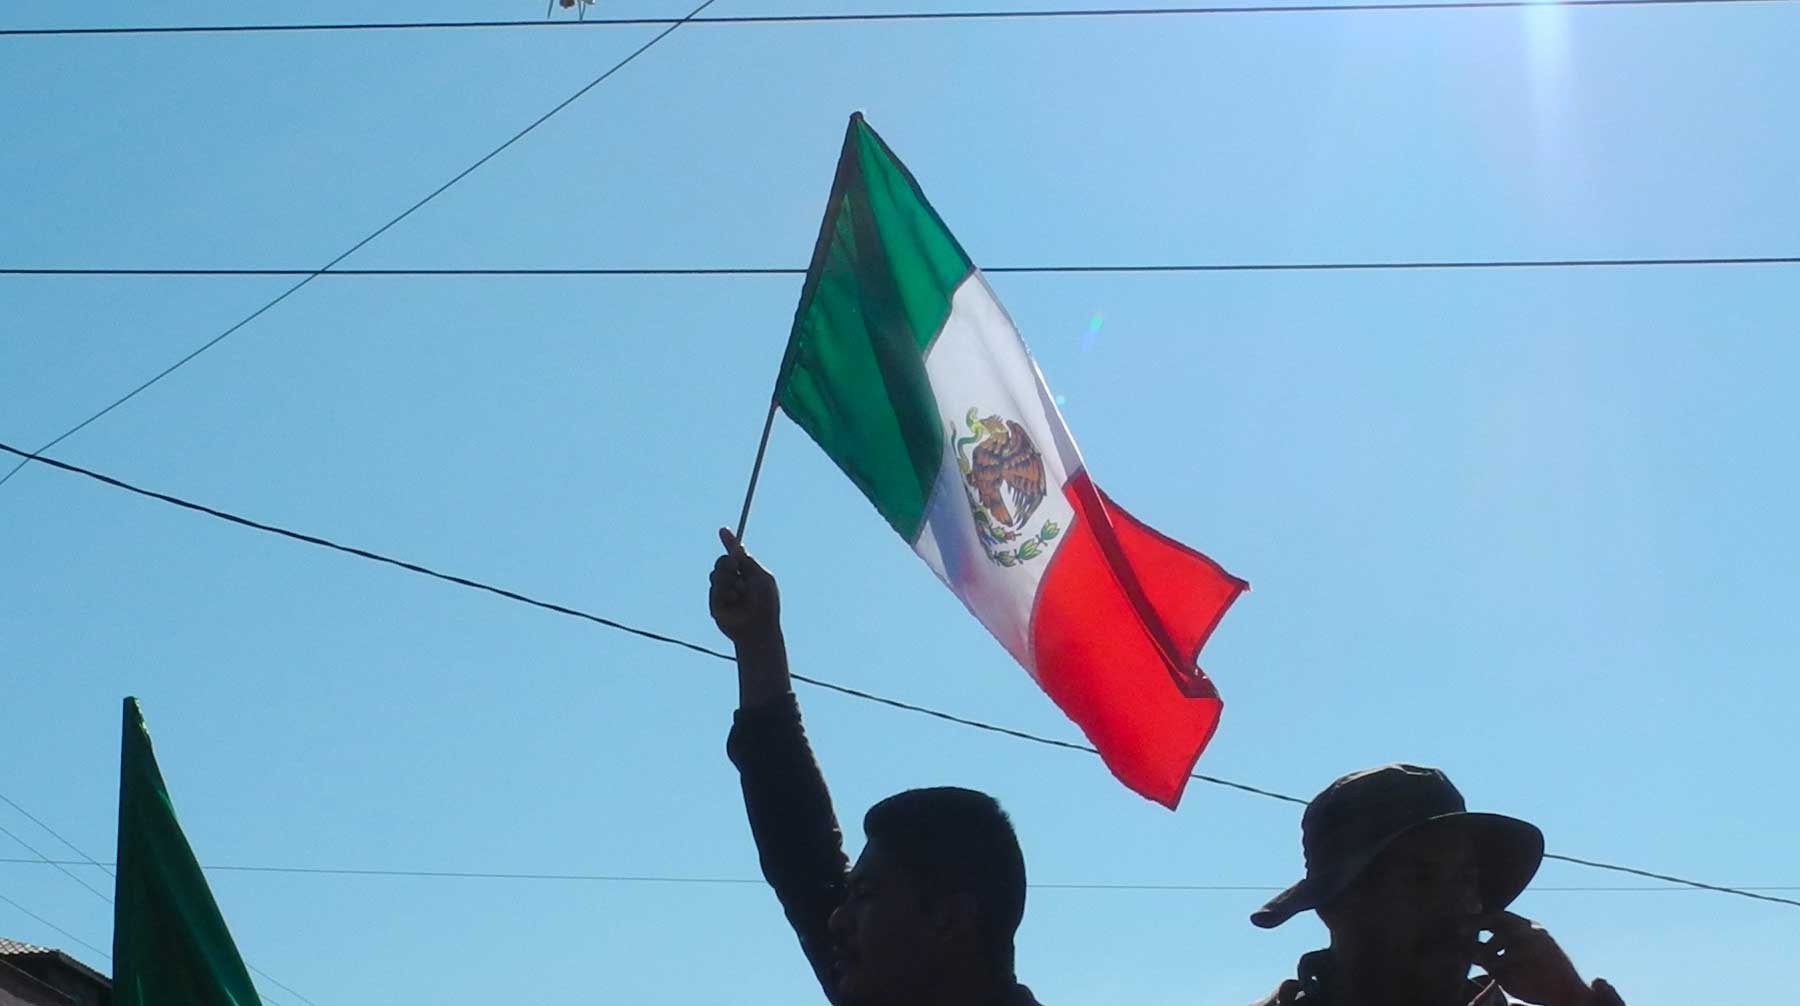 Ранее президент США Дональд Трамп сообщил о введении пошлин на мексиканские товары в связи с миграционным кризисом на границе Фото: © GLOBAL LOOK press / Amelie Richter